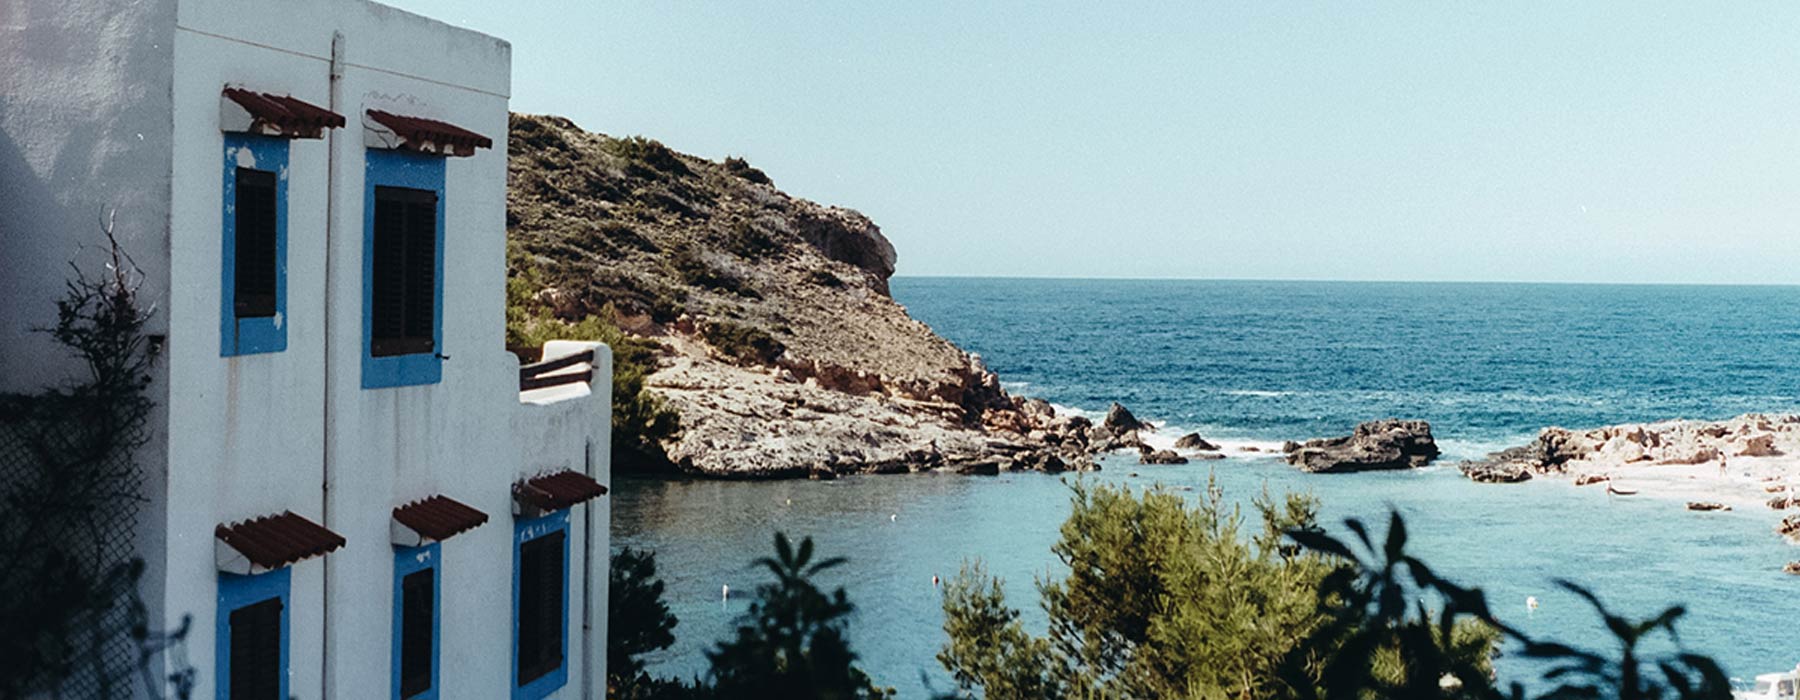 Balearic Islands<br class="hidden-md hidden-lg" /> Holidays